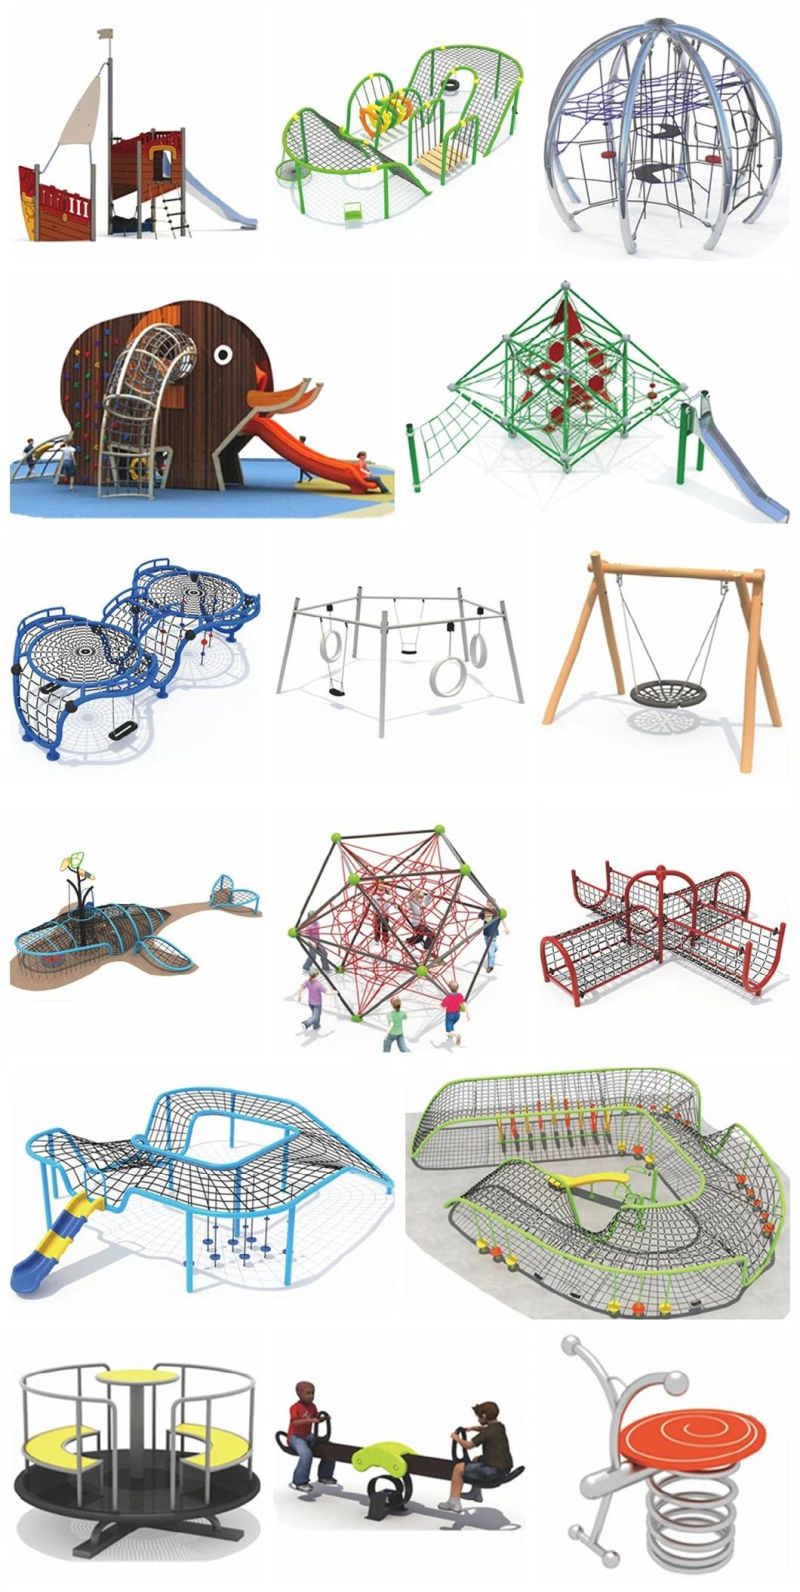 Park Outdoor Stainless Steel Robot Slide Children Playground Equipment